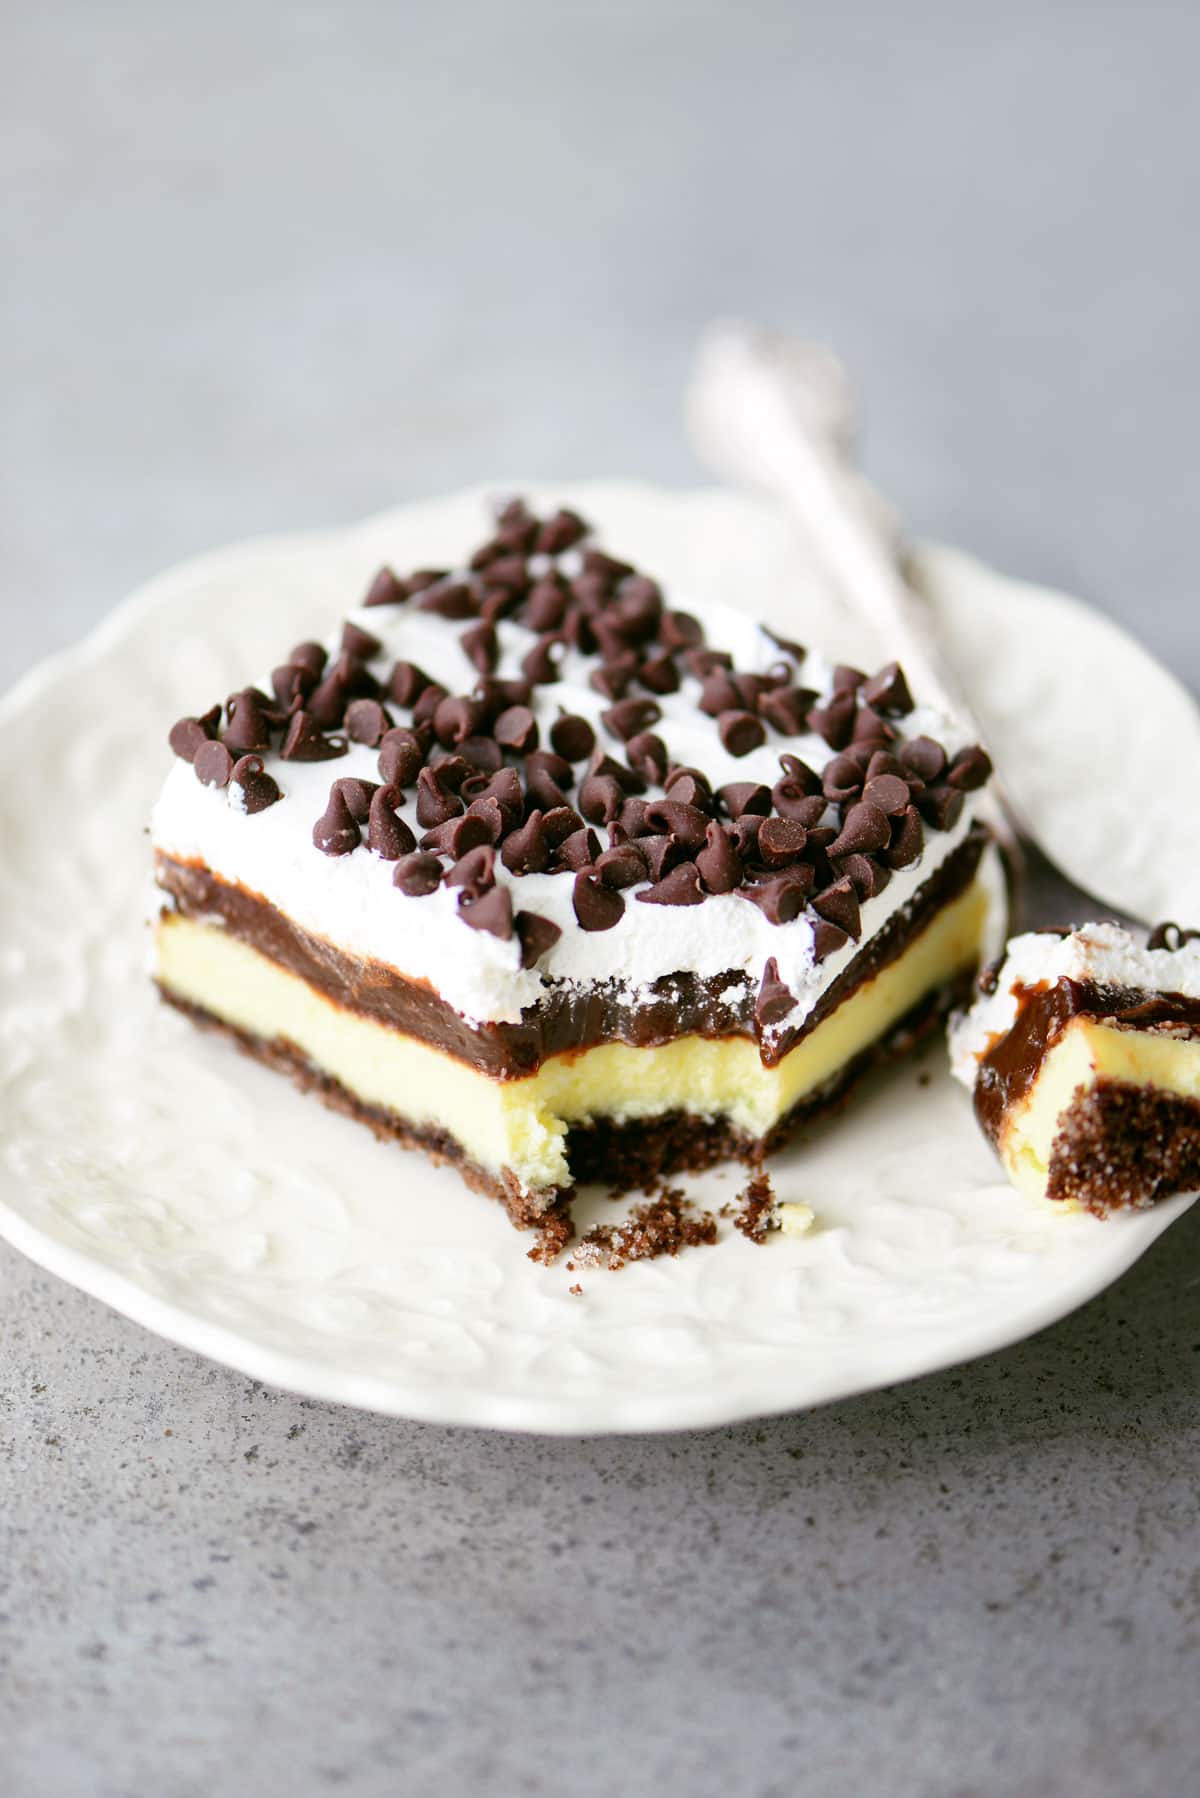 Chocolate Cheesecake Dessert Recipe